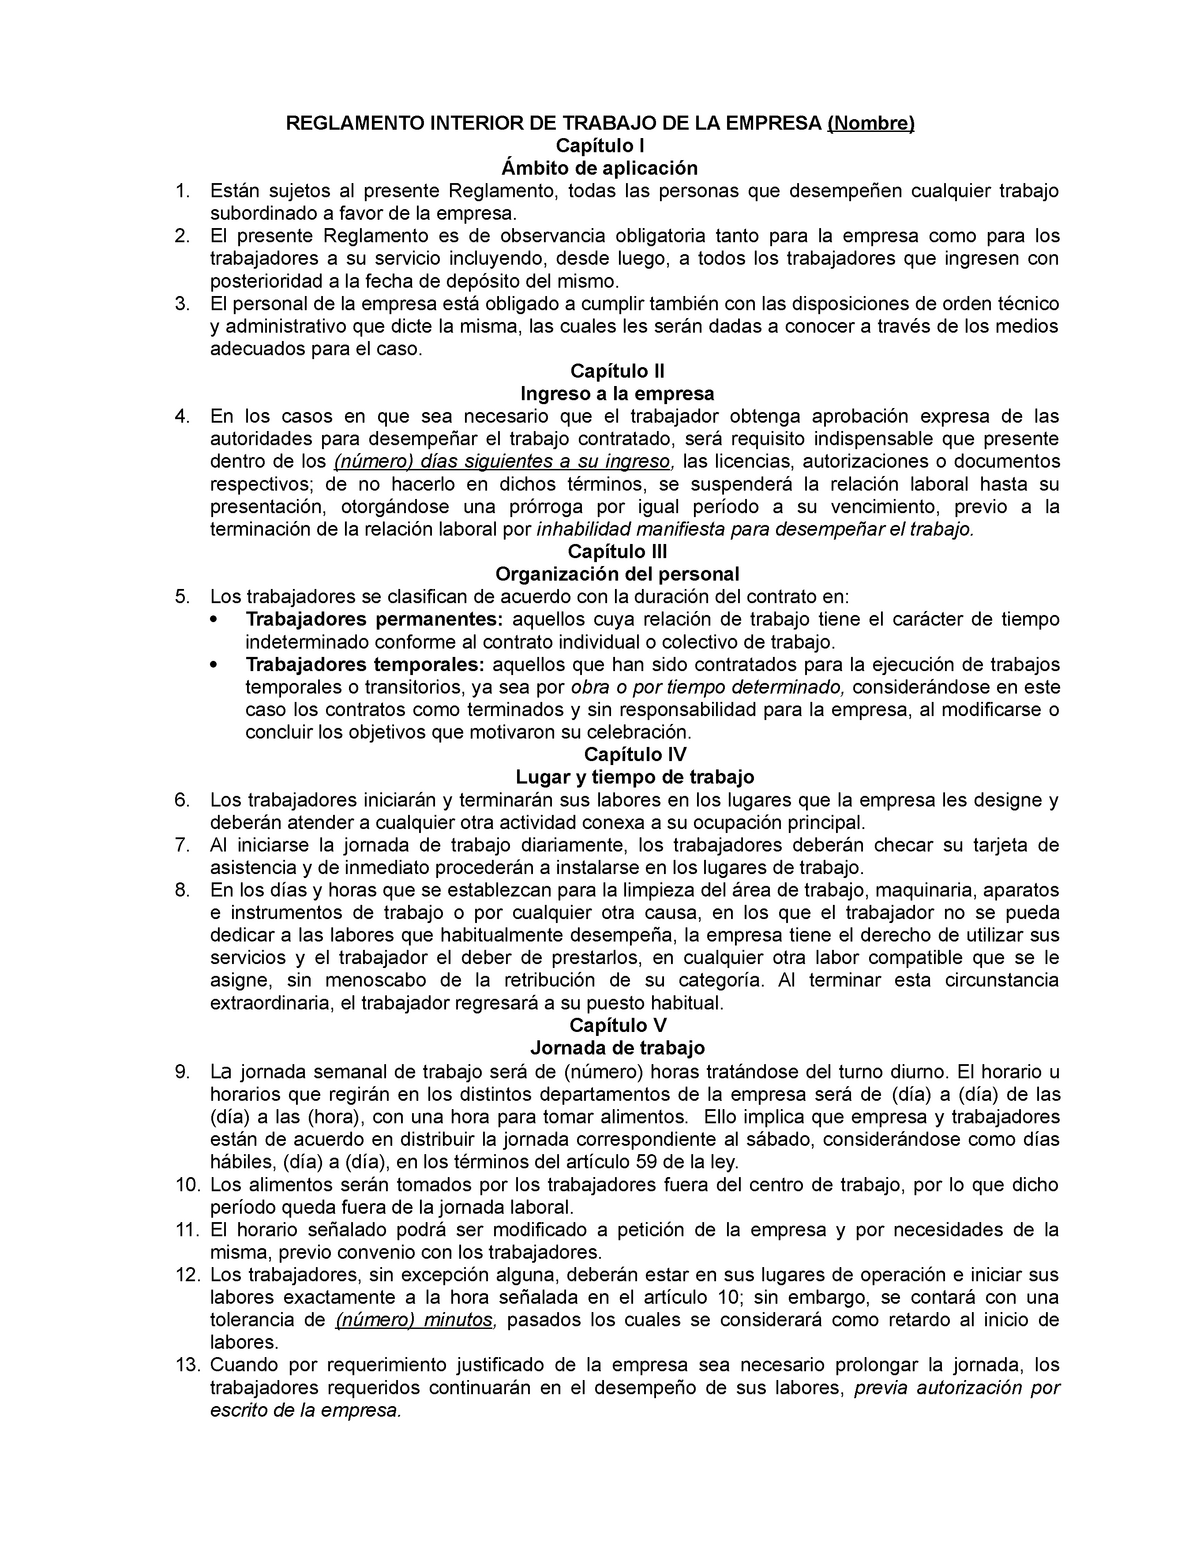 Modelo De Reglamento Interior De Trabajo Mexico Reglamento Interior De Trabajo De La Empresa 9279